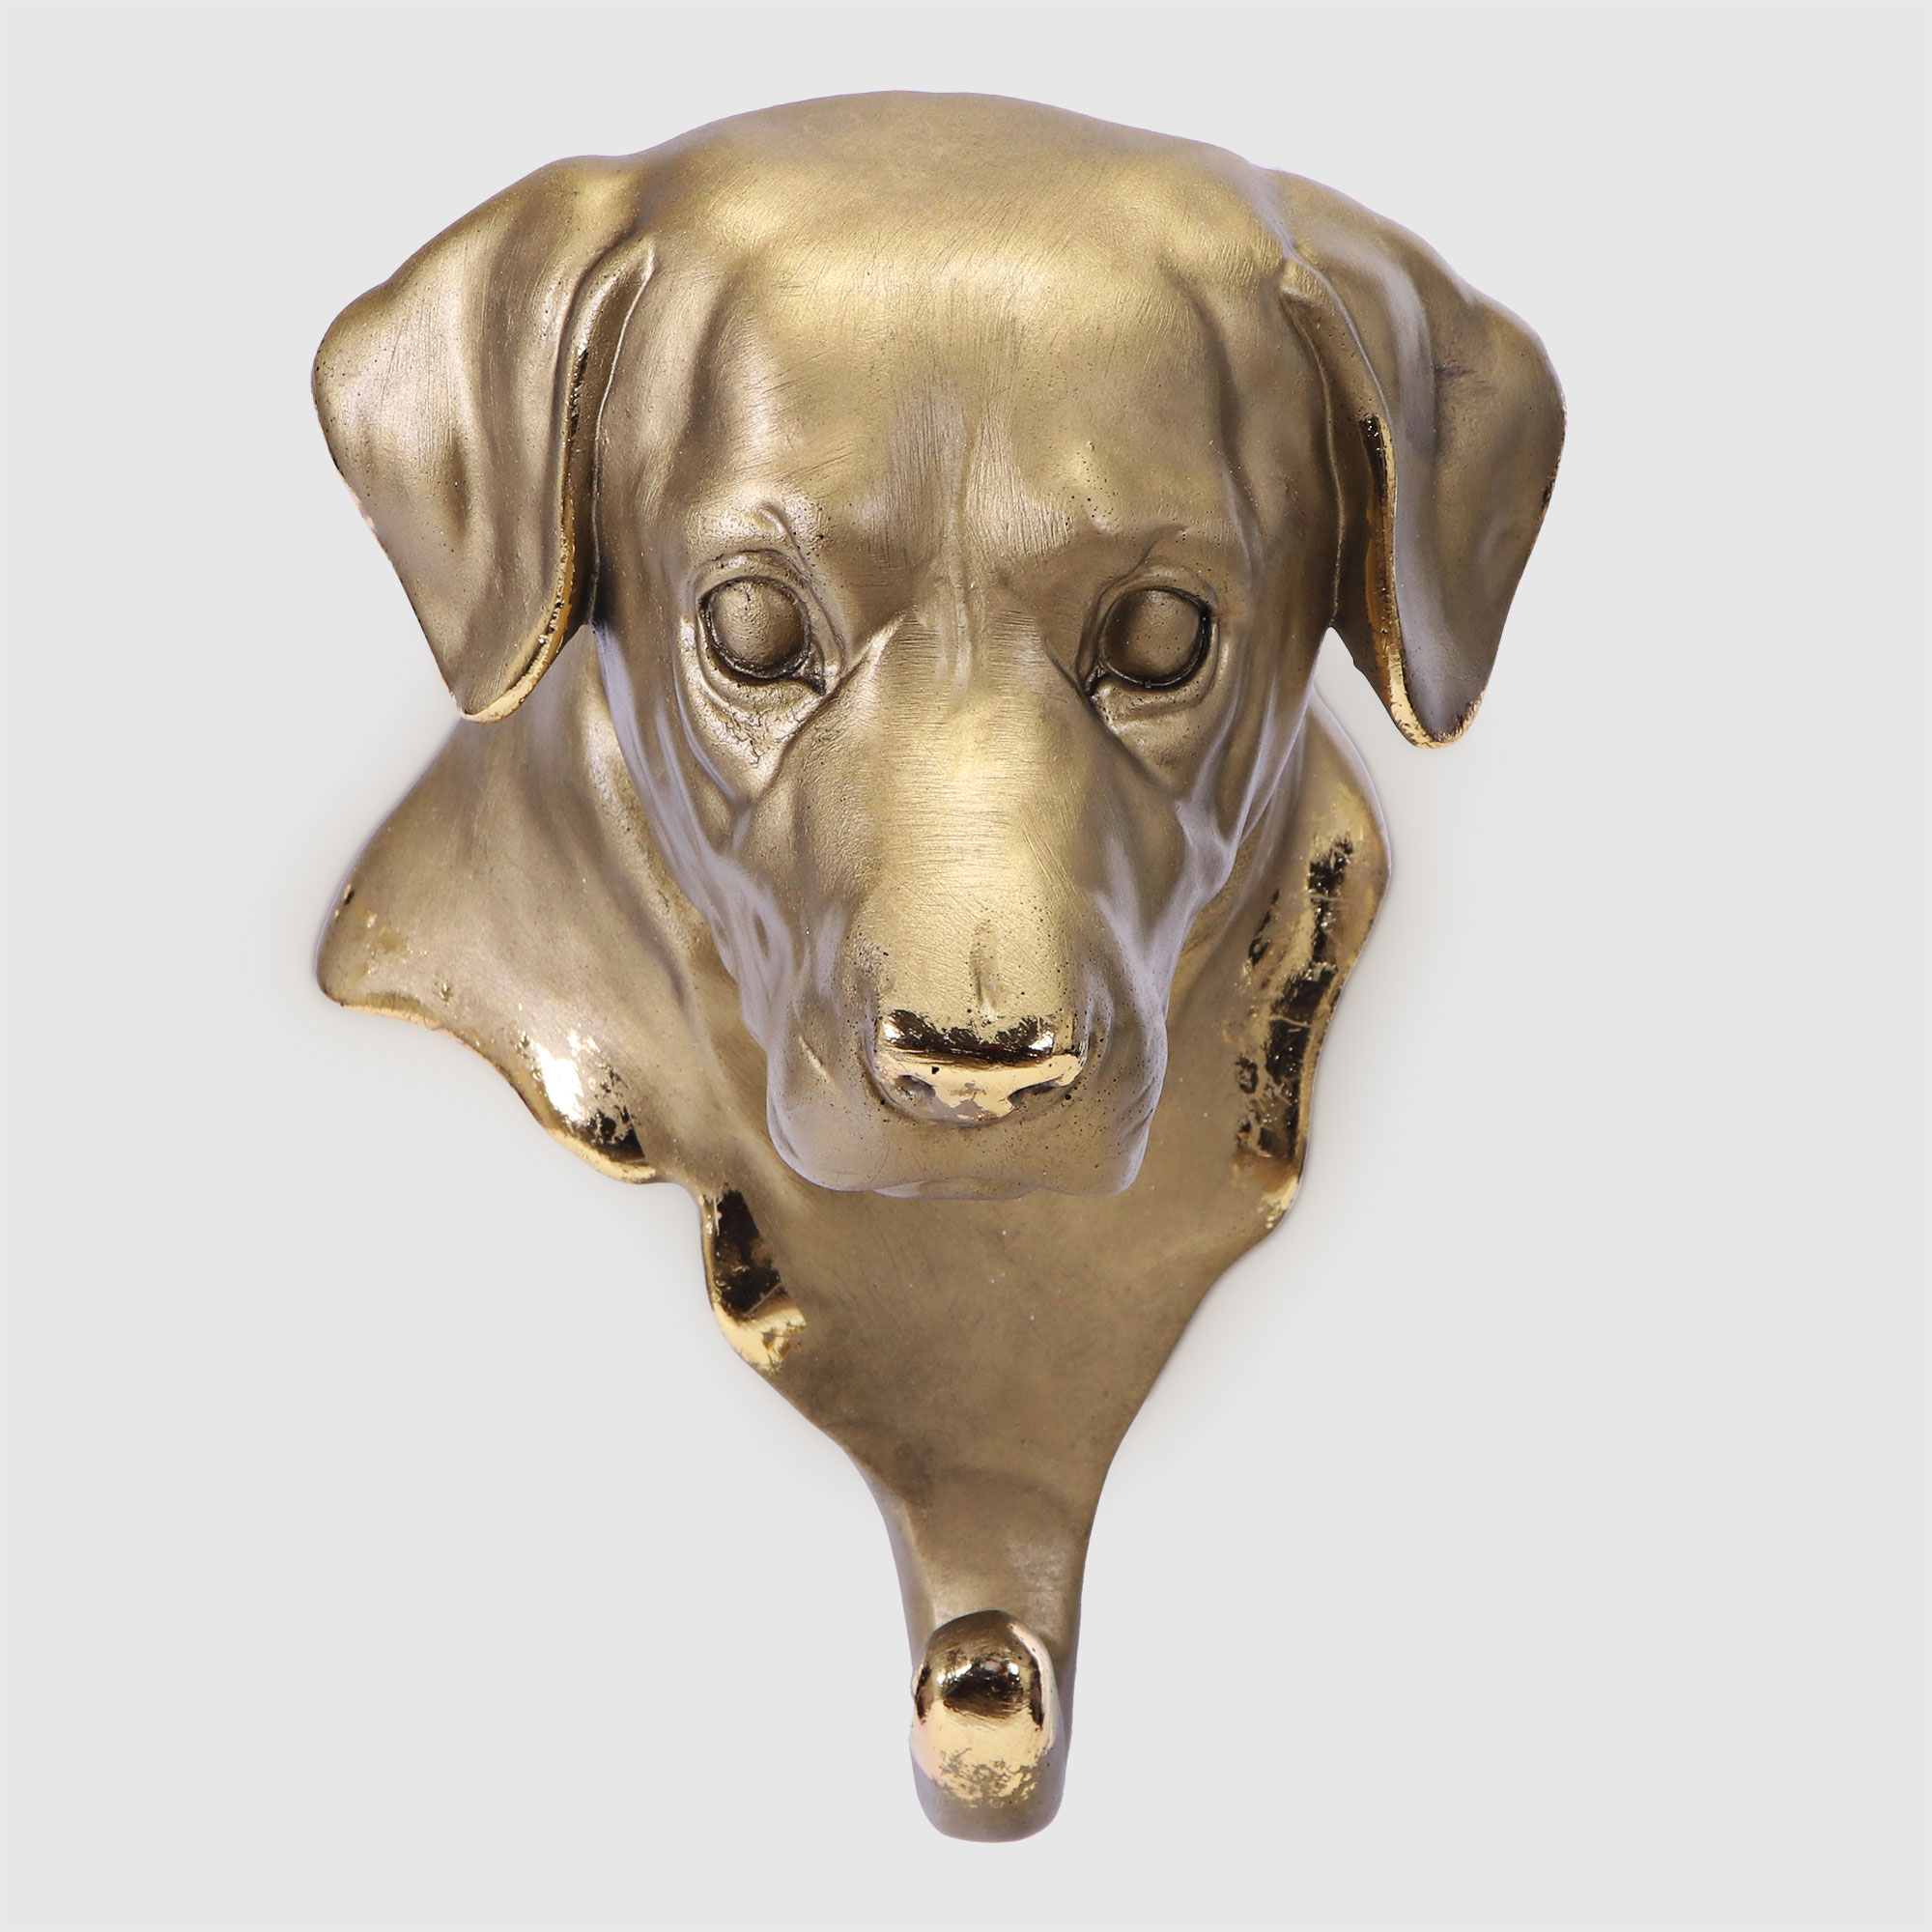 Вешалка настенная Тпк полиформ голова собаки бронзовая,высота 20 см